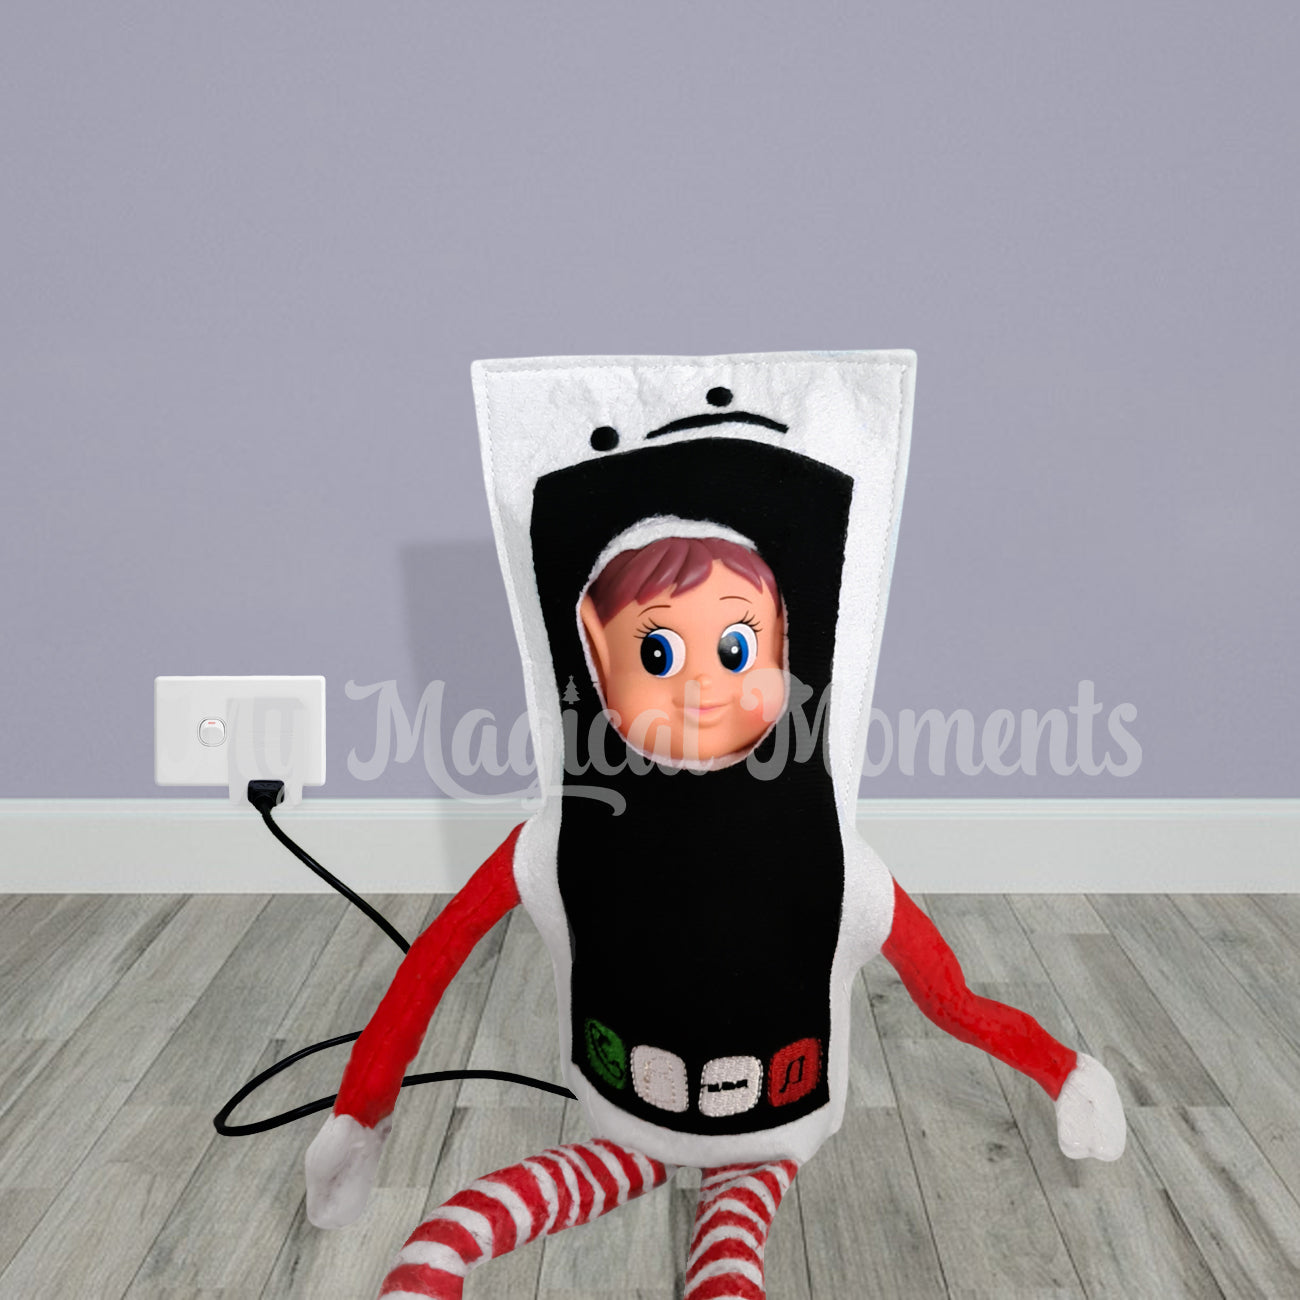 elf dressed as phone rechargin